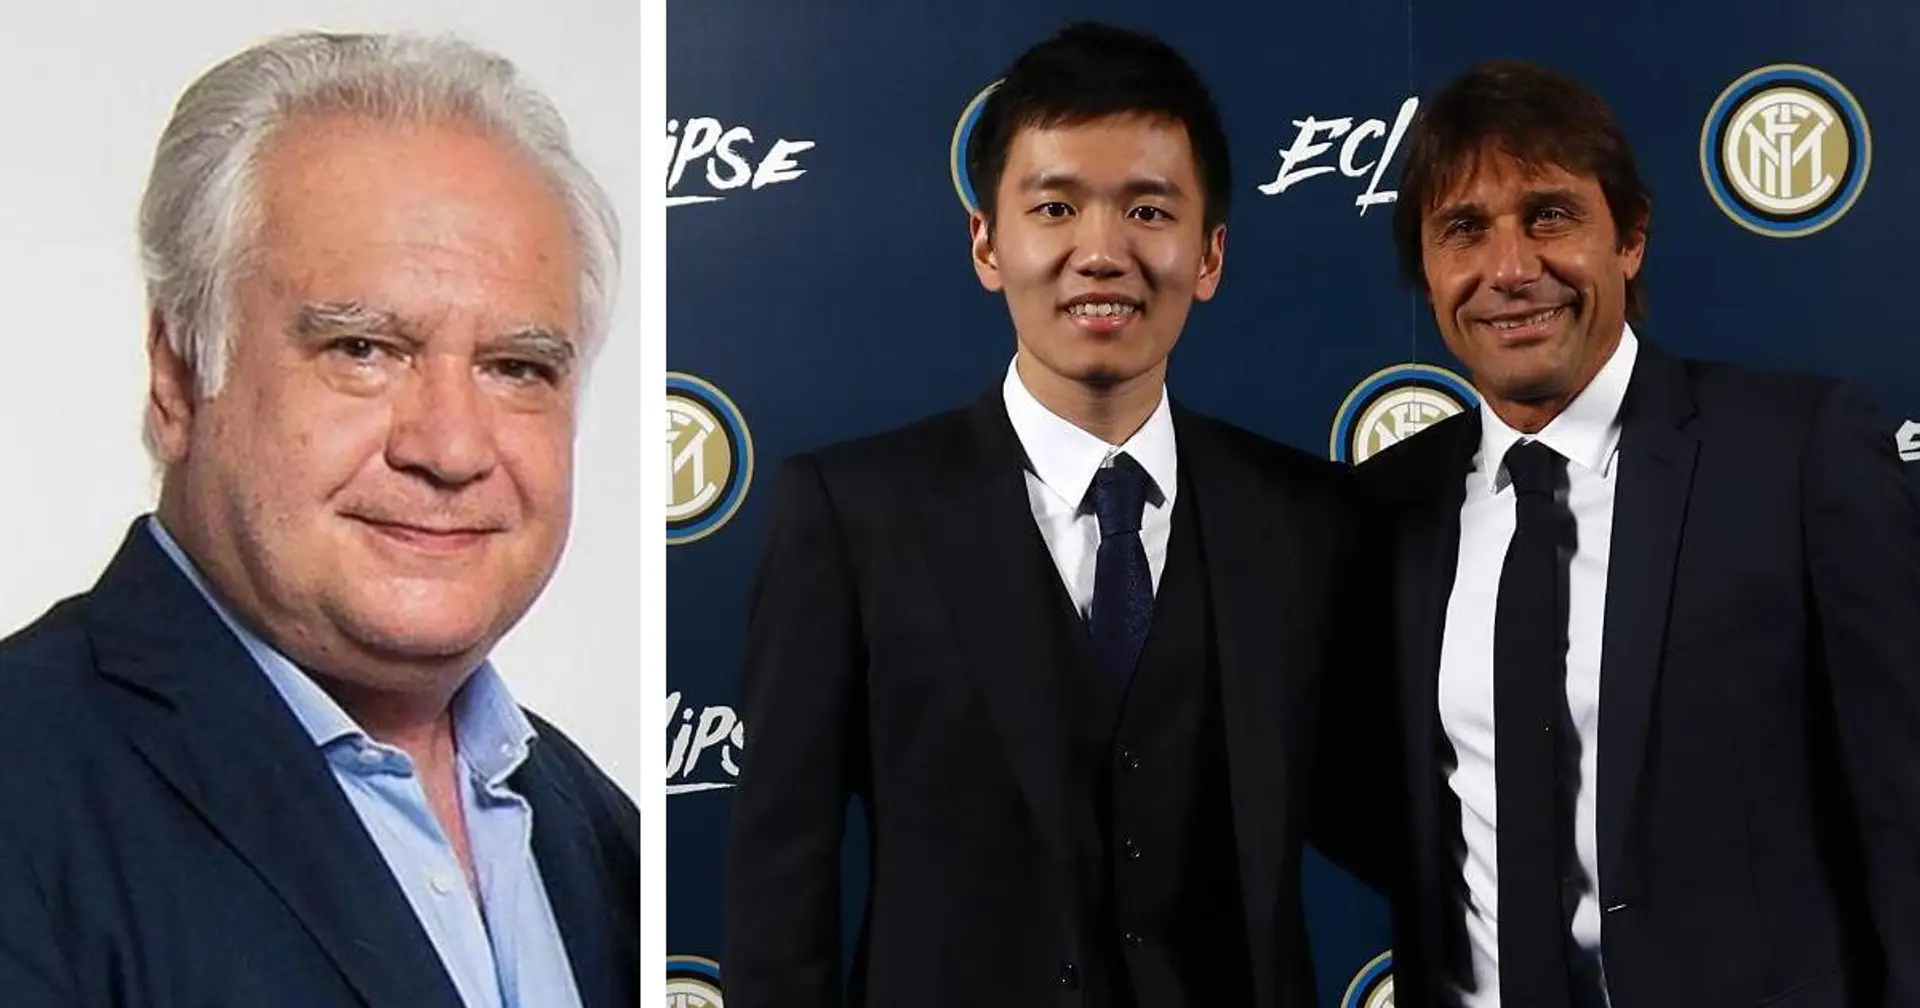 "Inter e Juve hanno acquistato i 4 migliori giocatori", Sconcerti giudica il mercato delle big 